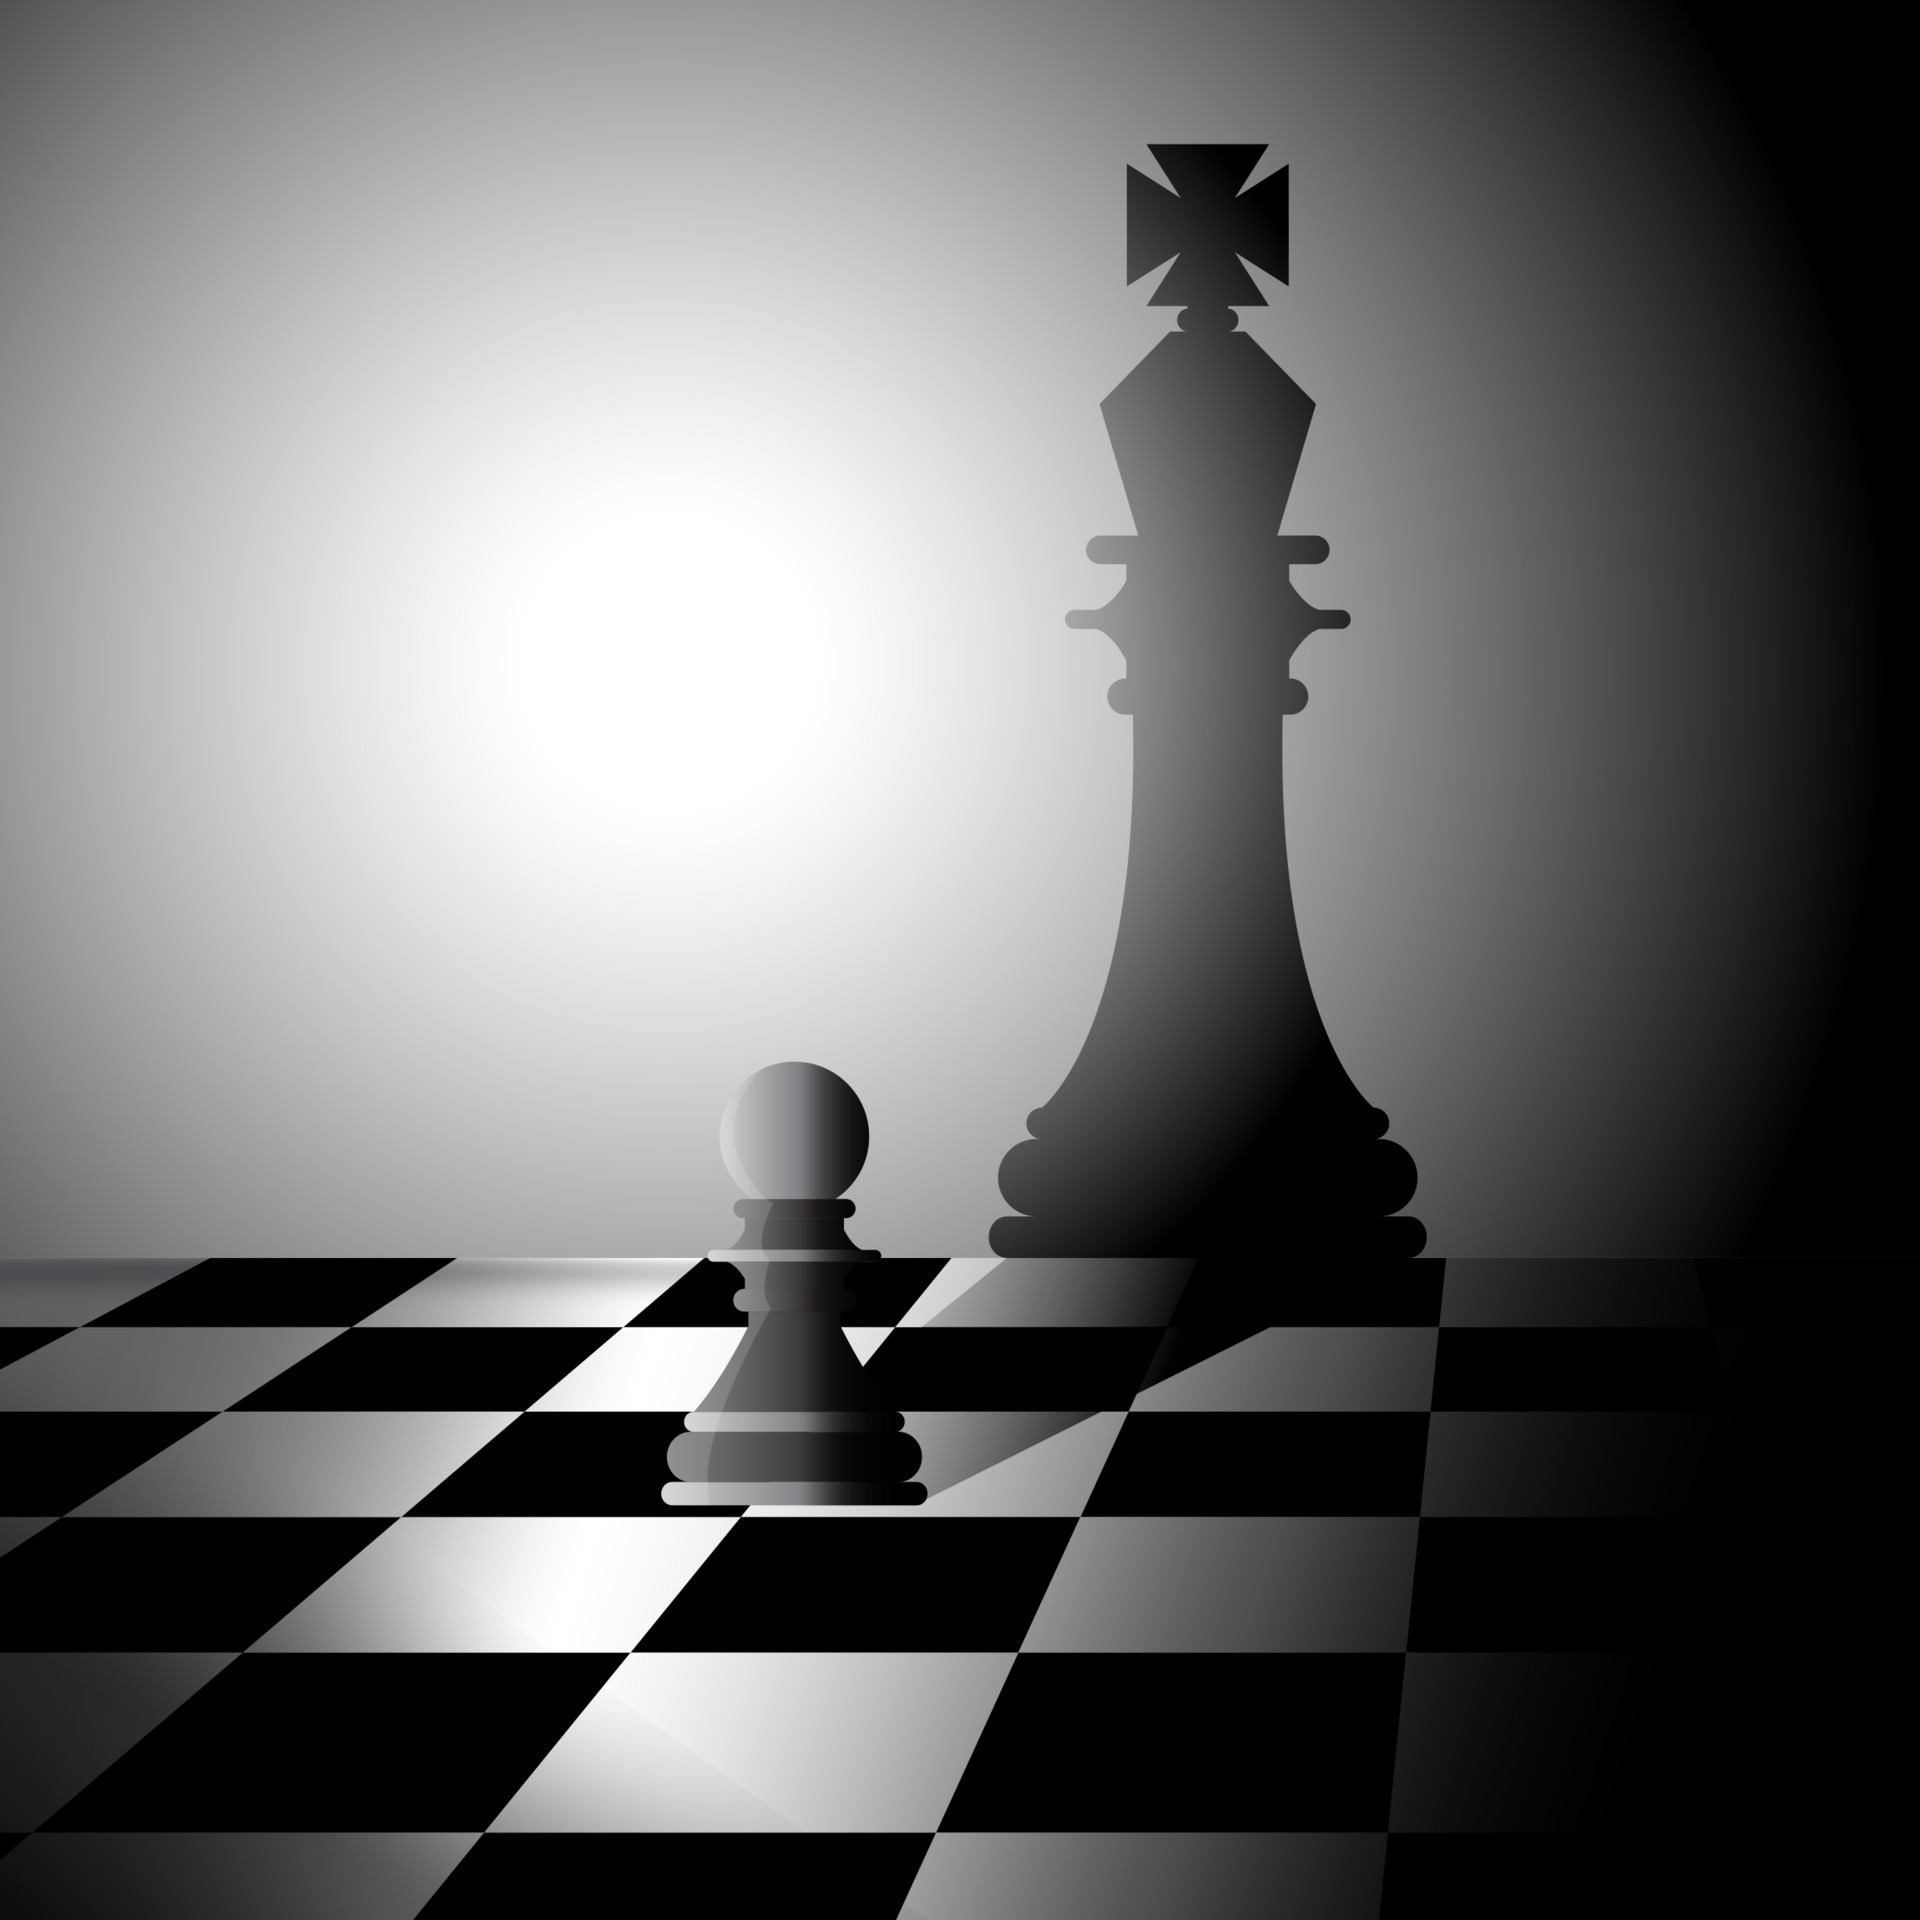 Schach König Stück - Kostenlose Vektorgrafik auf Pixabay - Pixabay